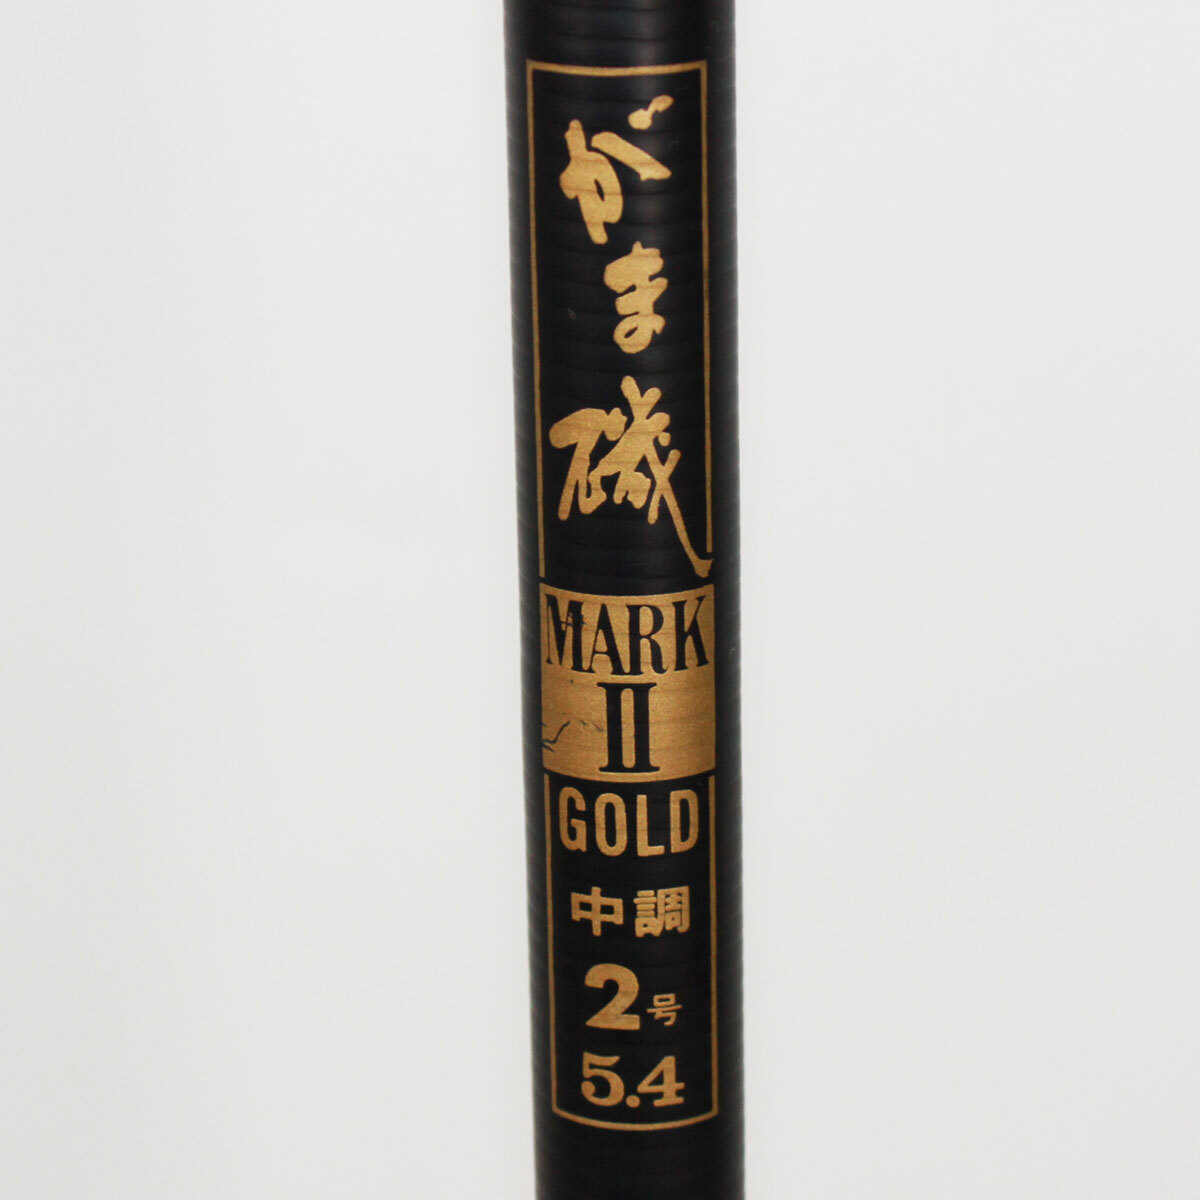 釣竿 がまかつ がま磯 マークⅡ ゴールド MARK-Ⅱ GOLD 中調 2号 5.4 ロッド 現状品 中古品 nn0101 138